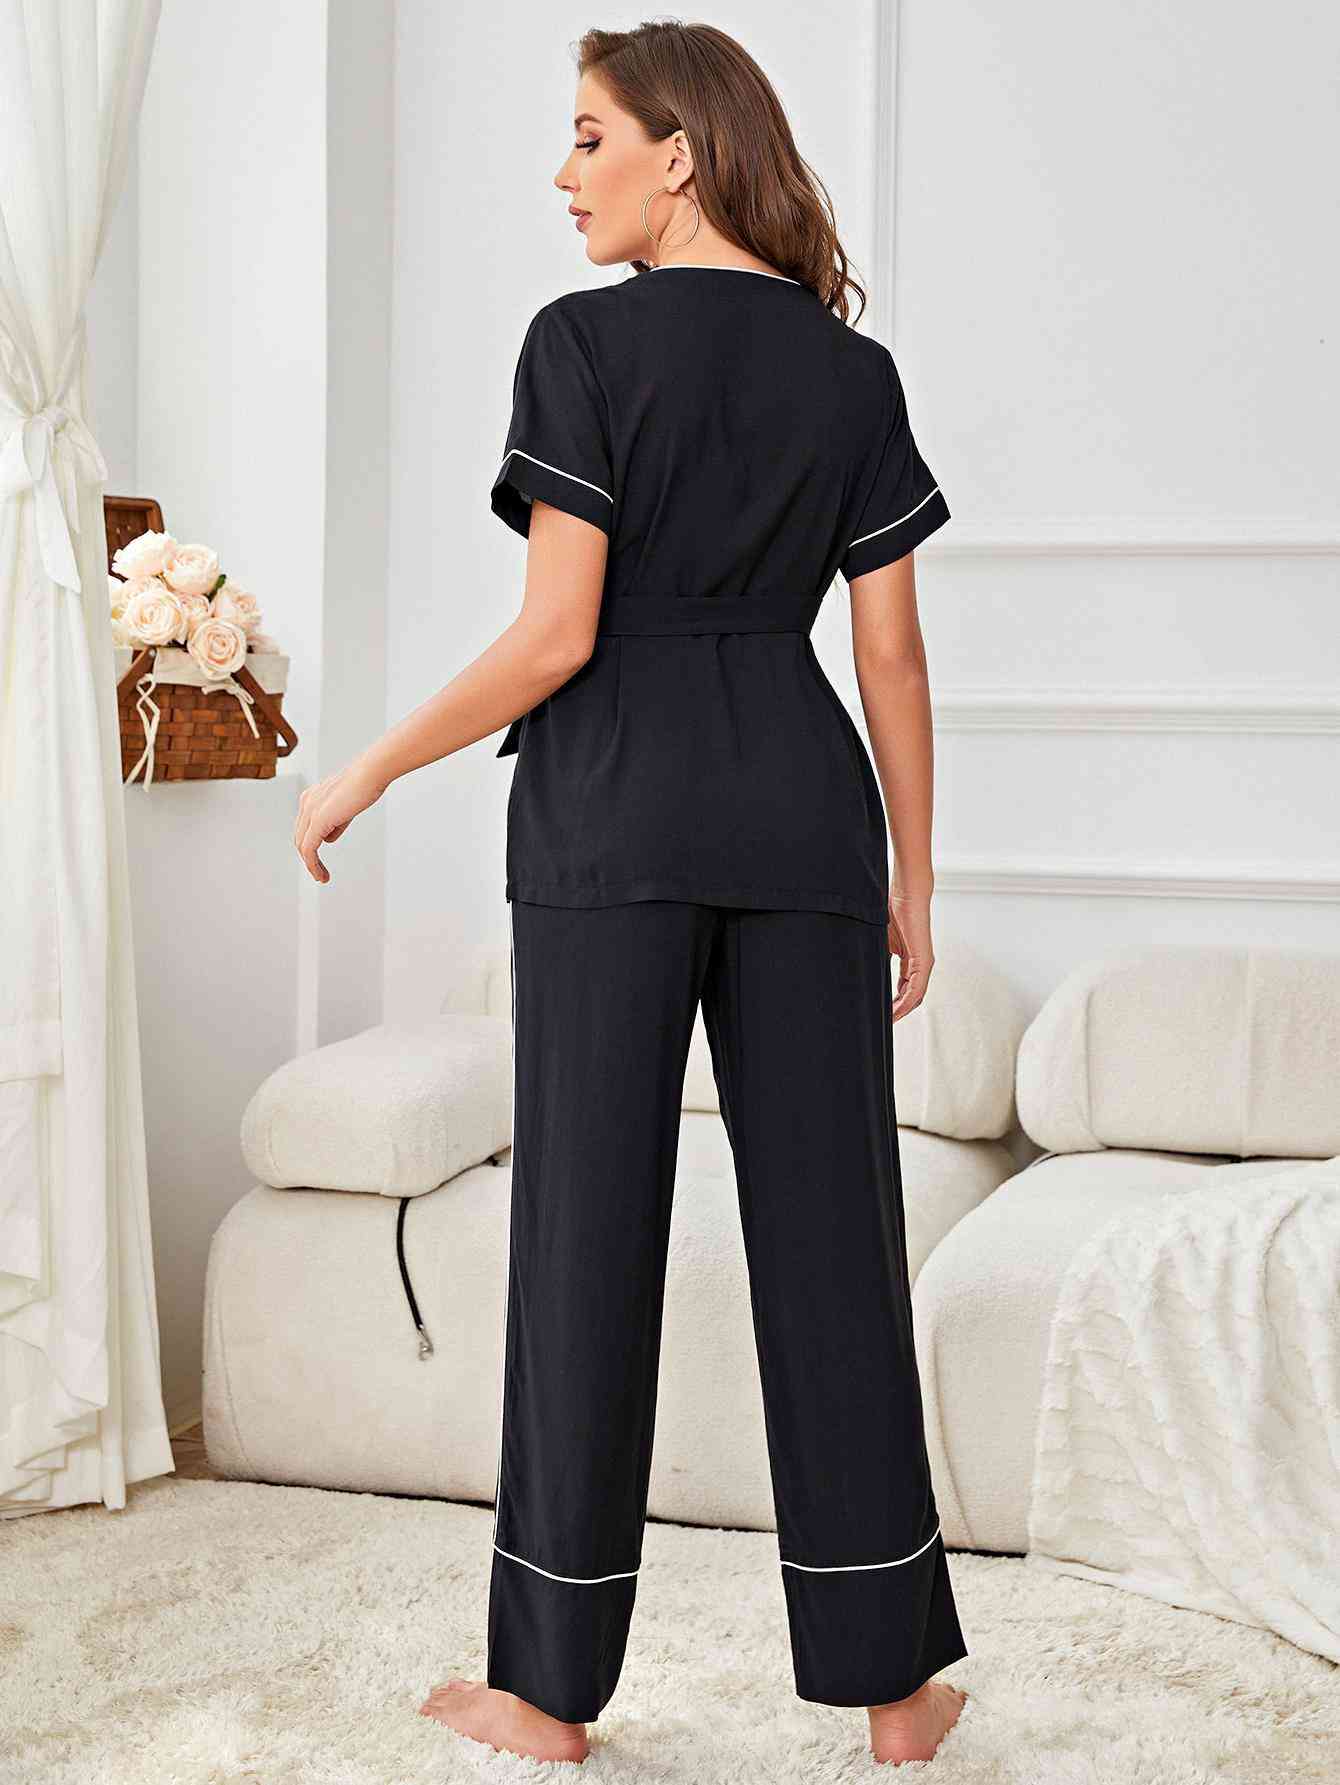 Back of model wearing black short sleeve pajama set